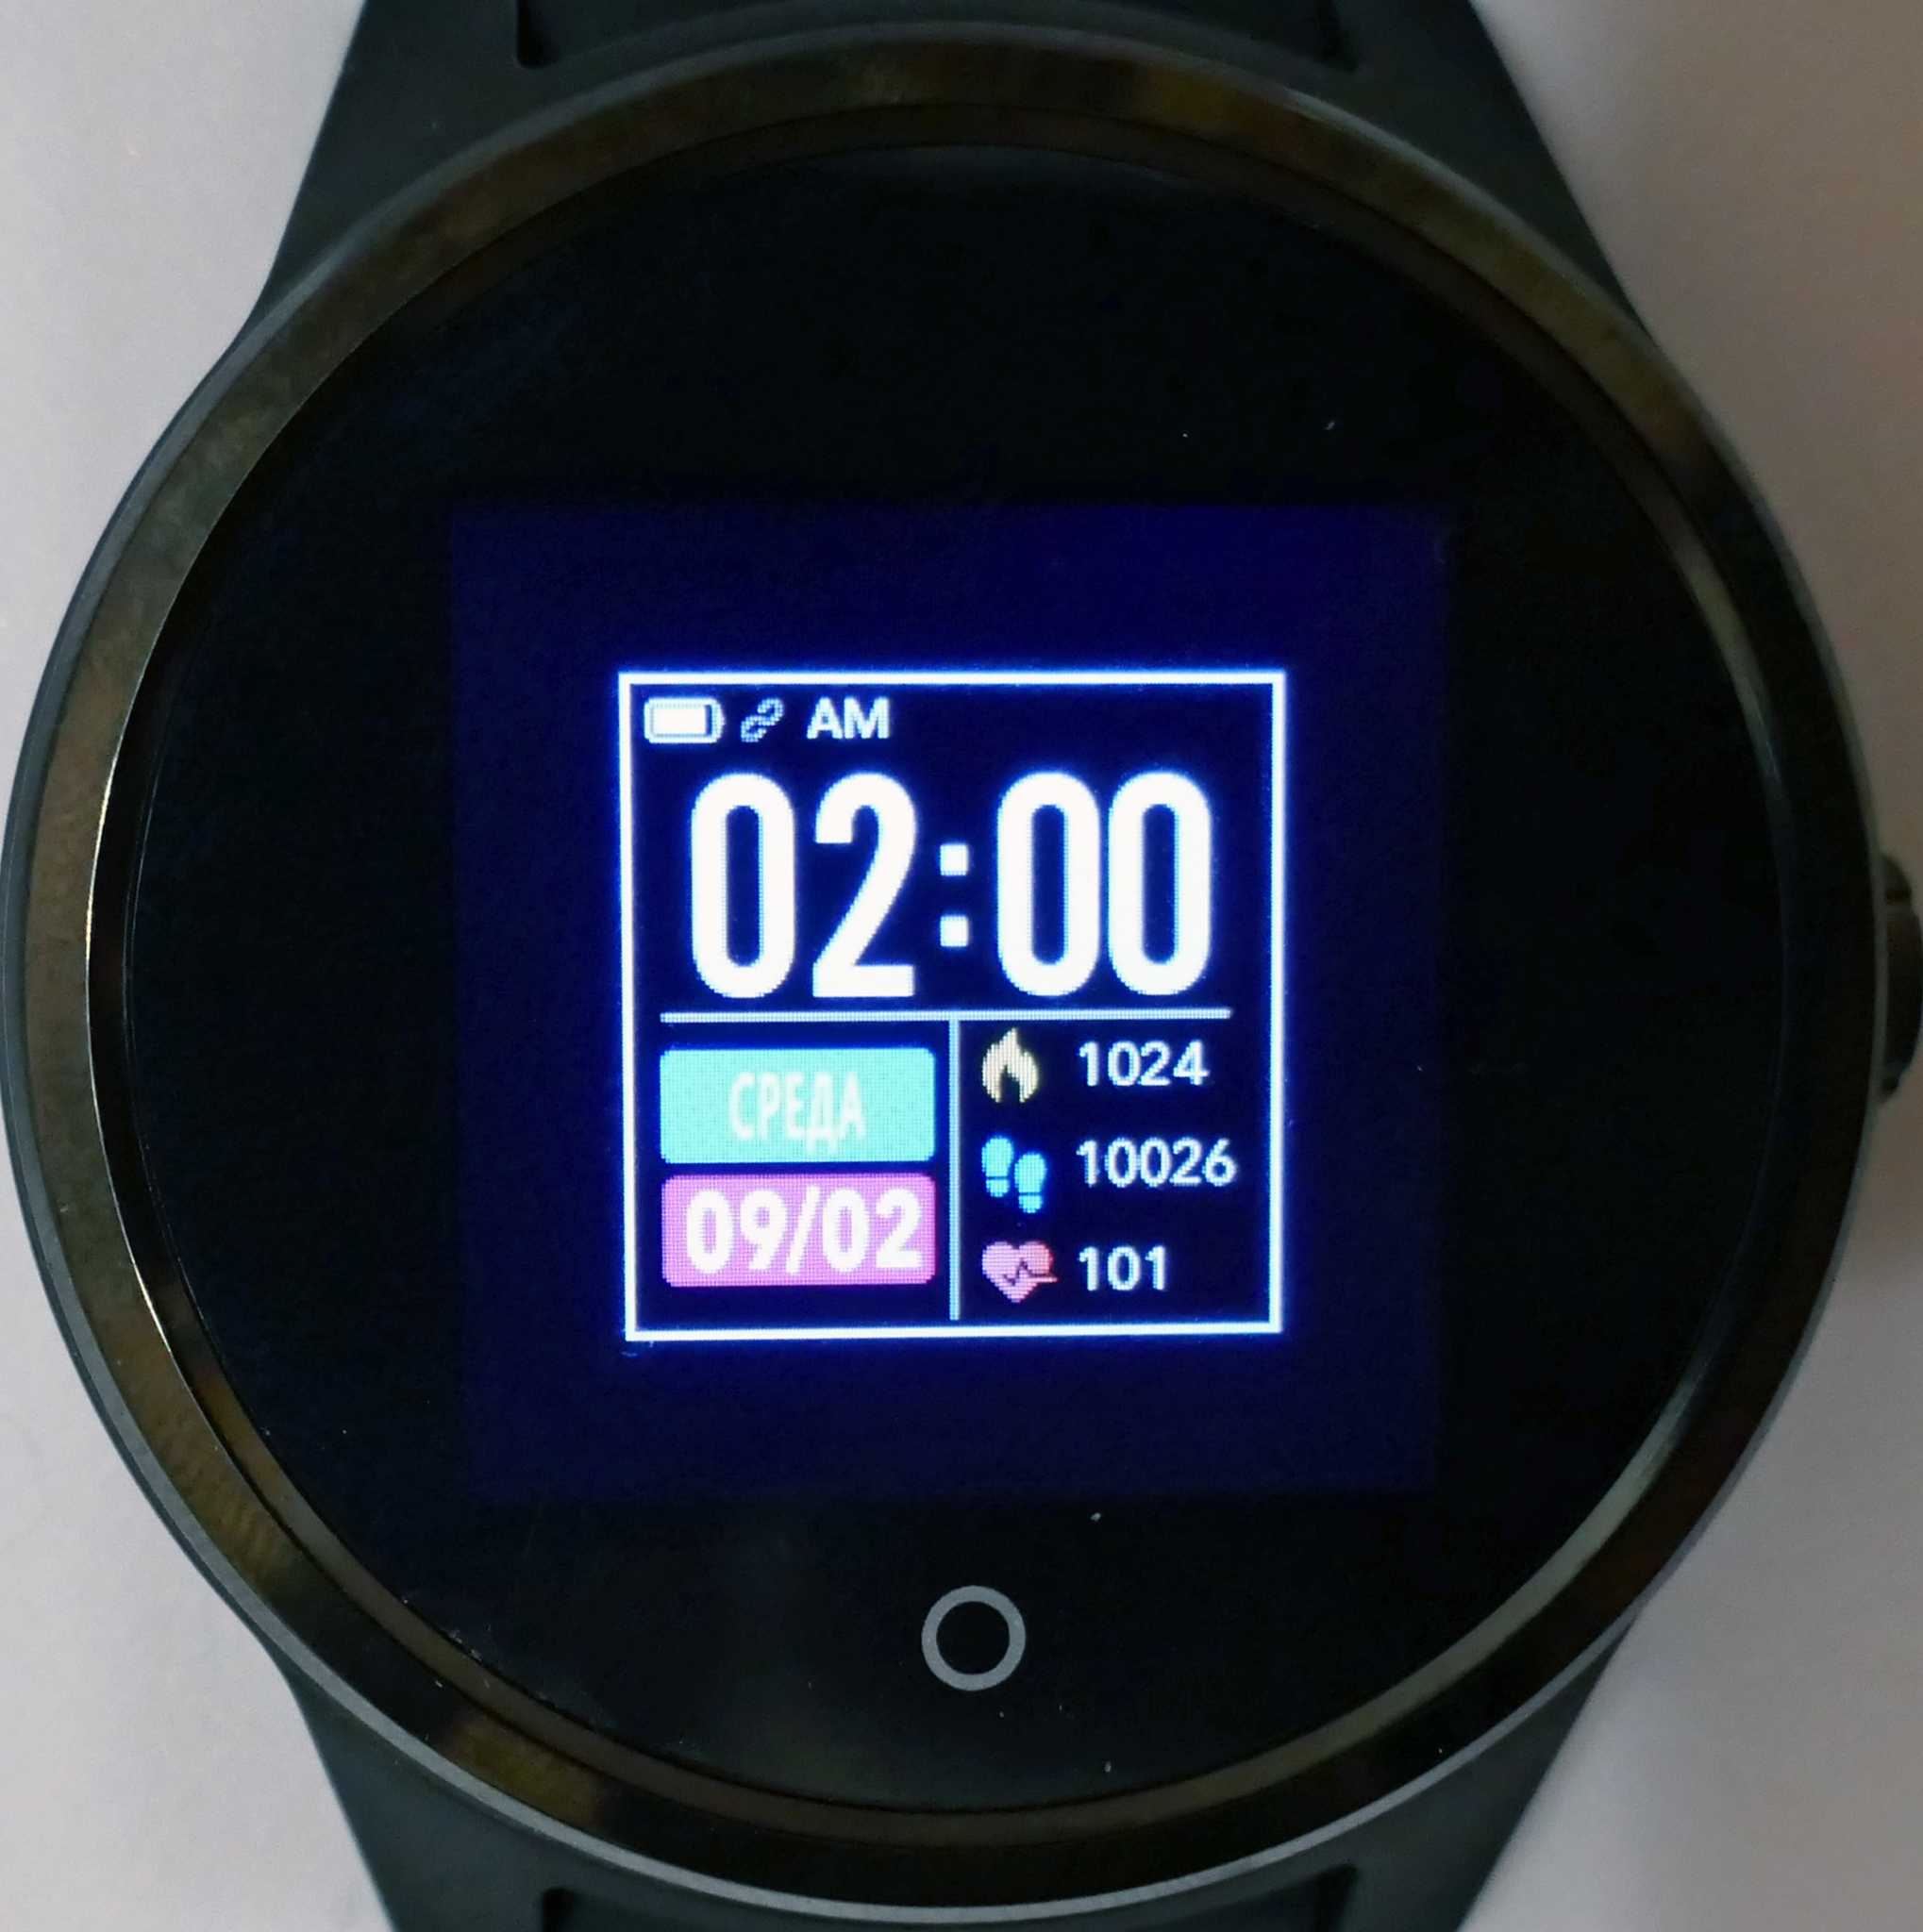 Новый обзор geozon vita plus - смарт часы, где купить и стоимость, достоинства и минусы, возможности часов